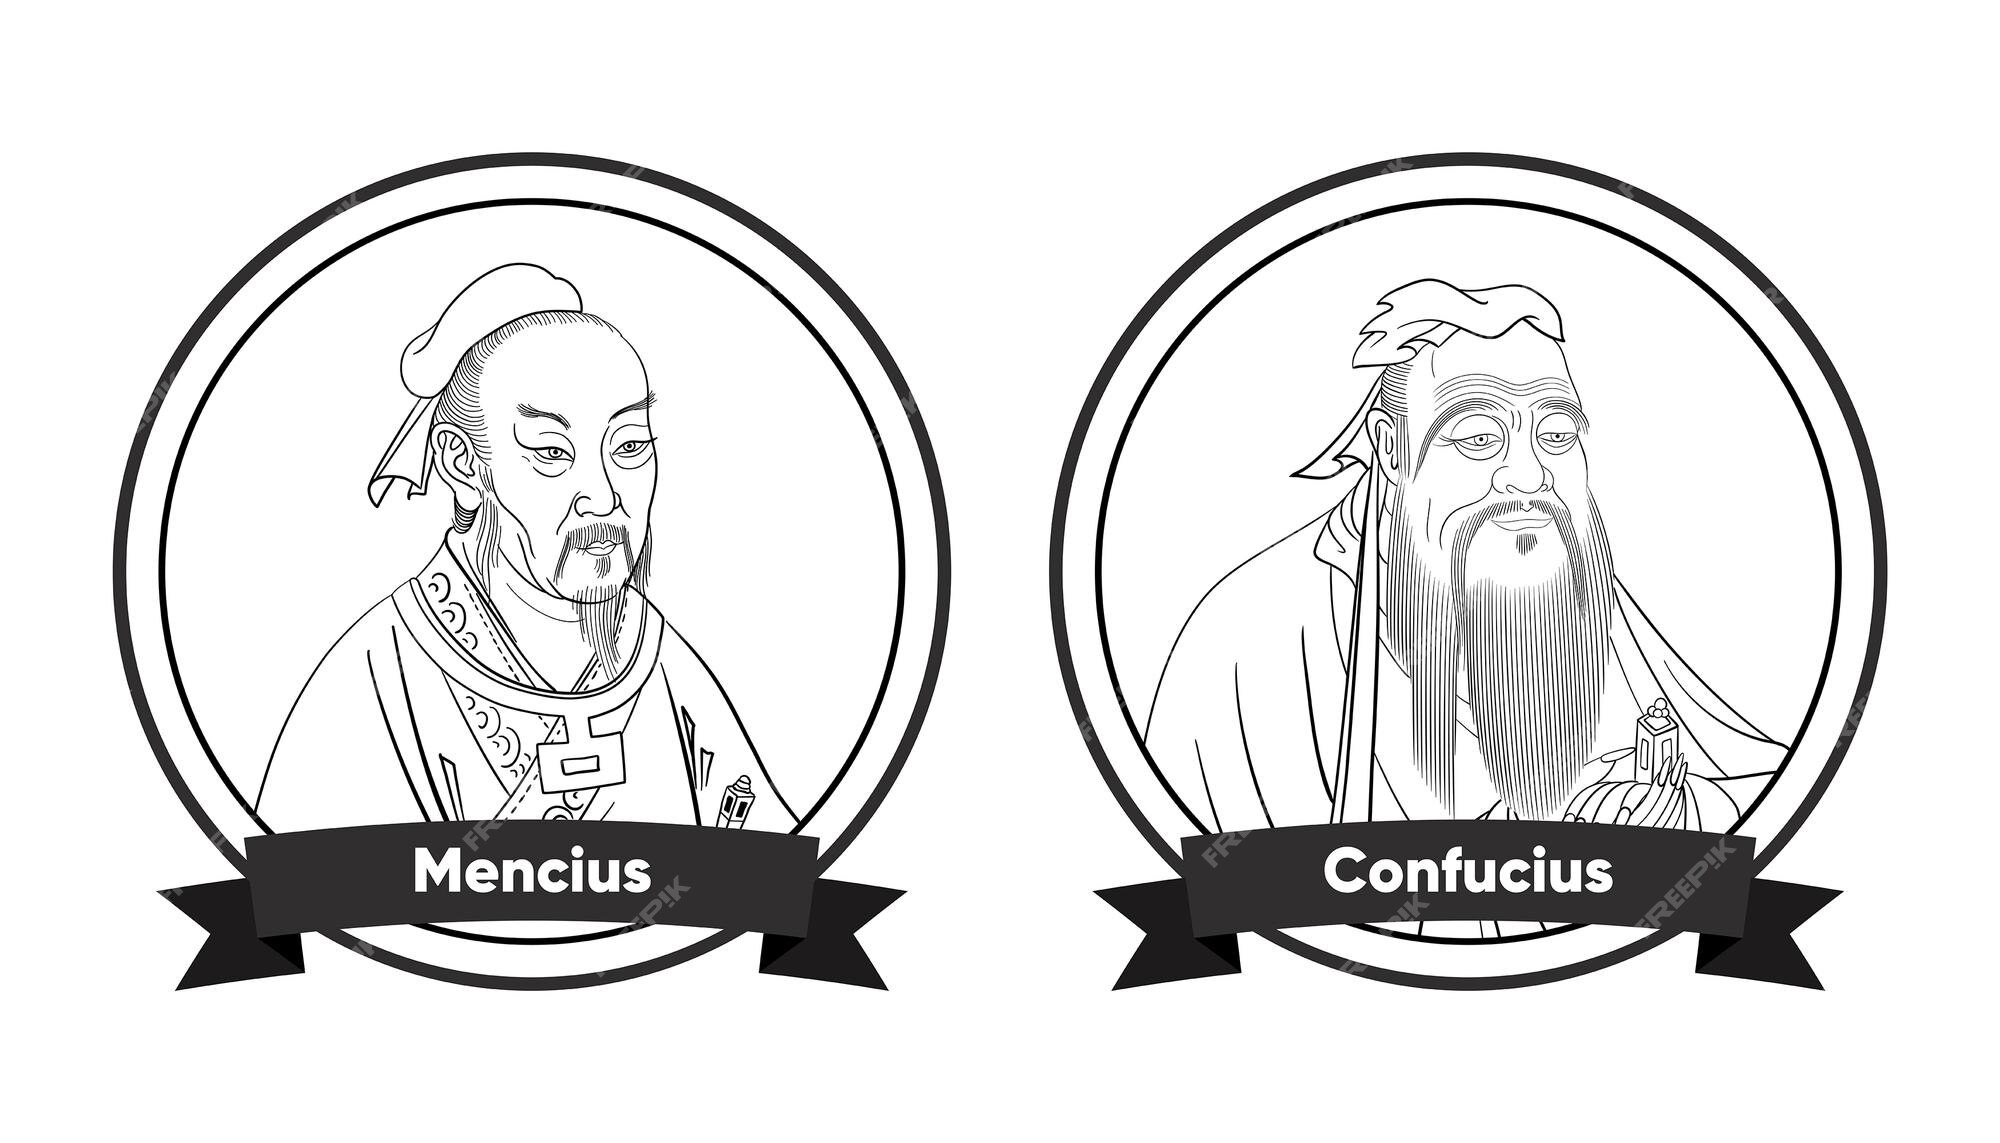 chinese-philosophers-mencius-confucius_401406-90.jpg